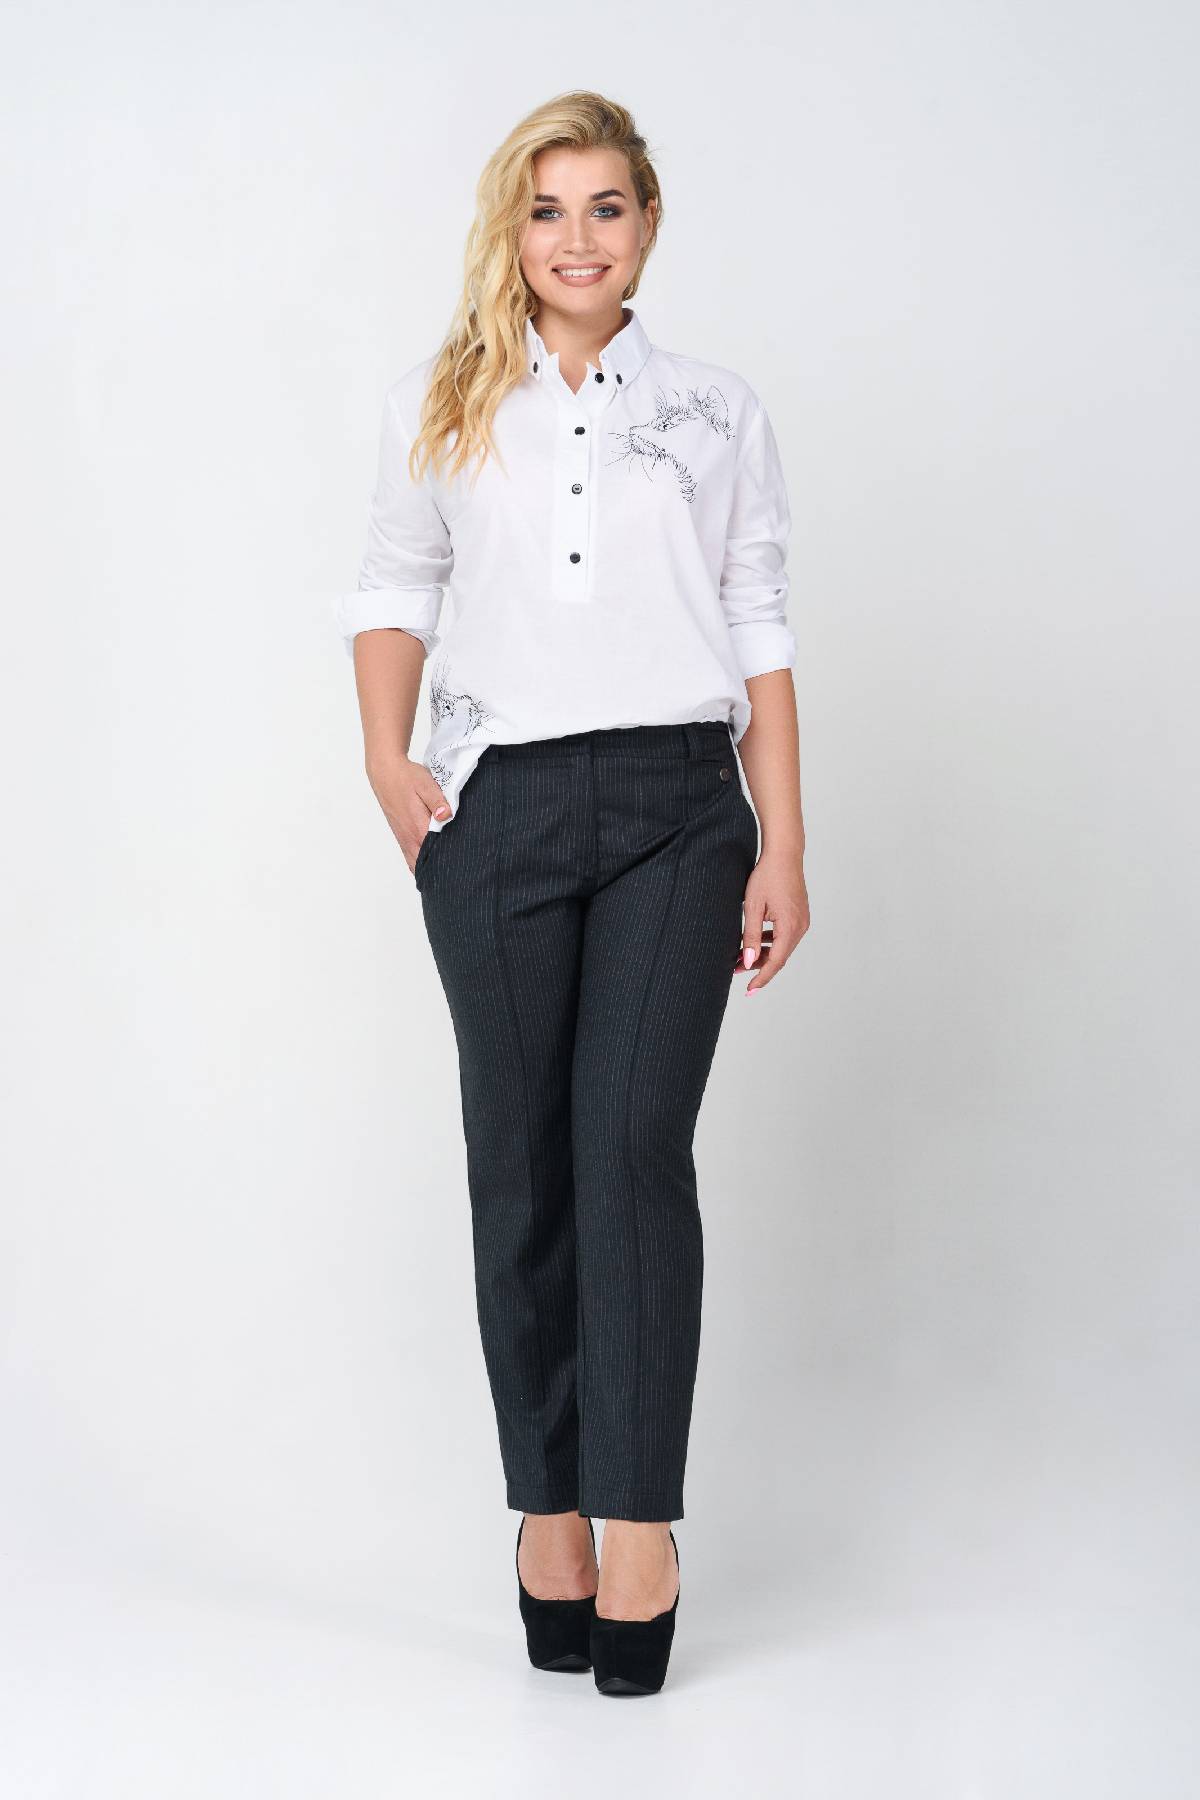 Mitt Refine generally Офісні жіночі штани великих розмірів | Купити в Інтернет-магазині RicaMare